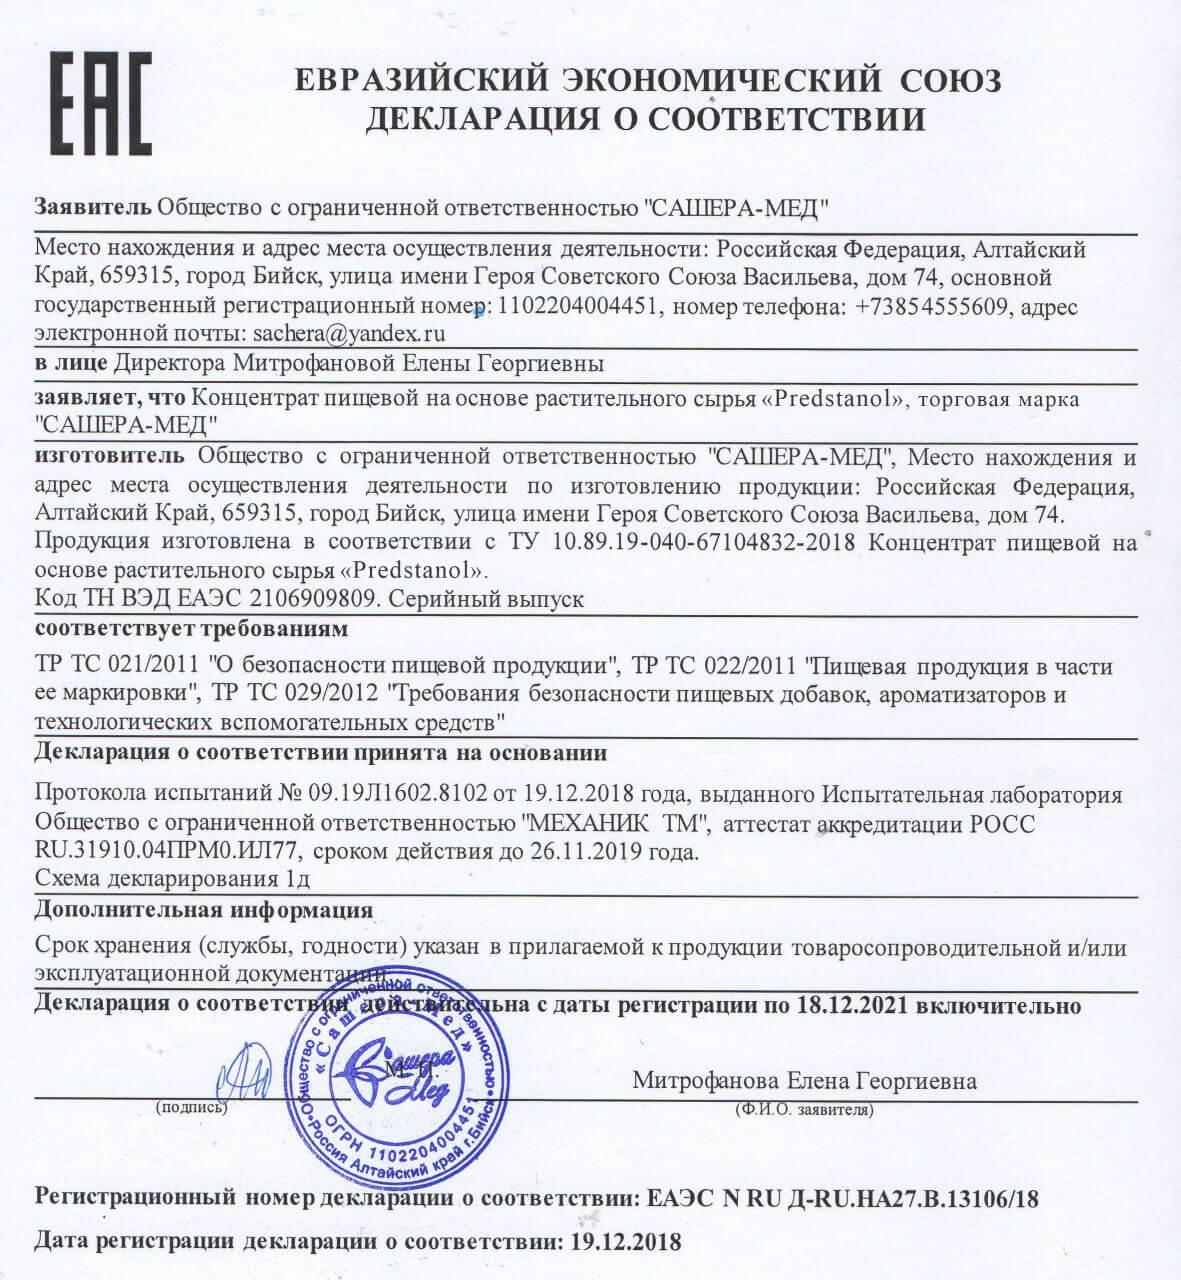 Сертификат на предстанол во Владивостоке